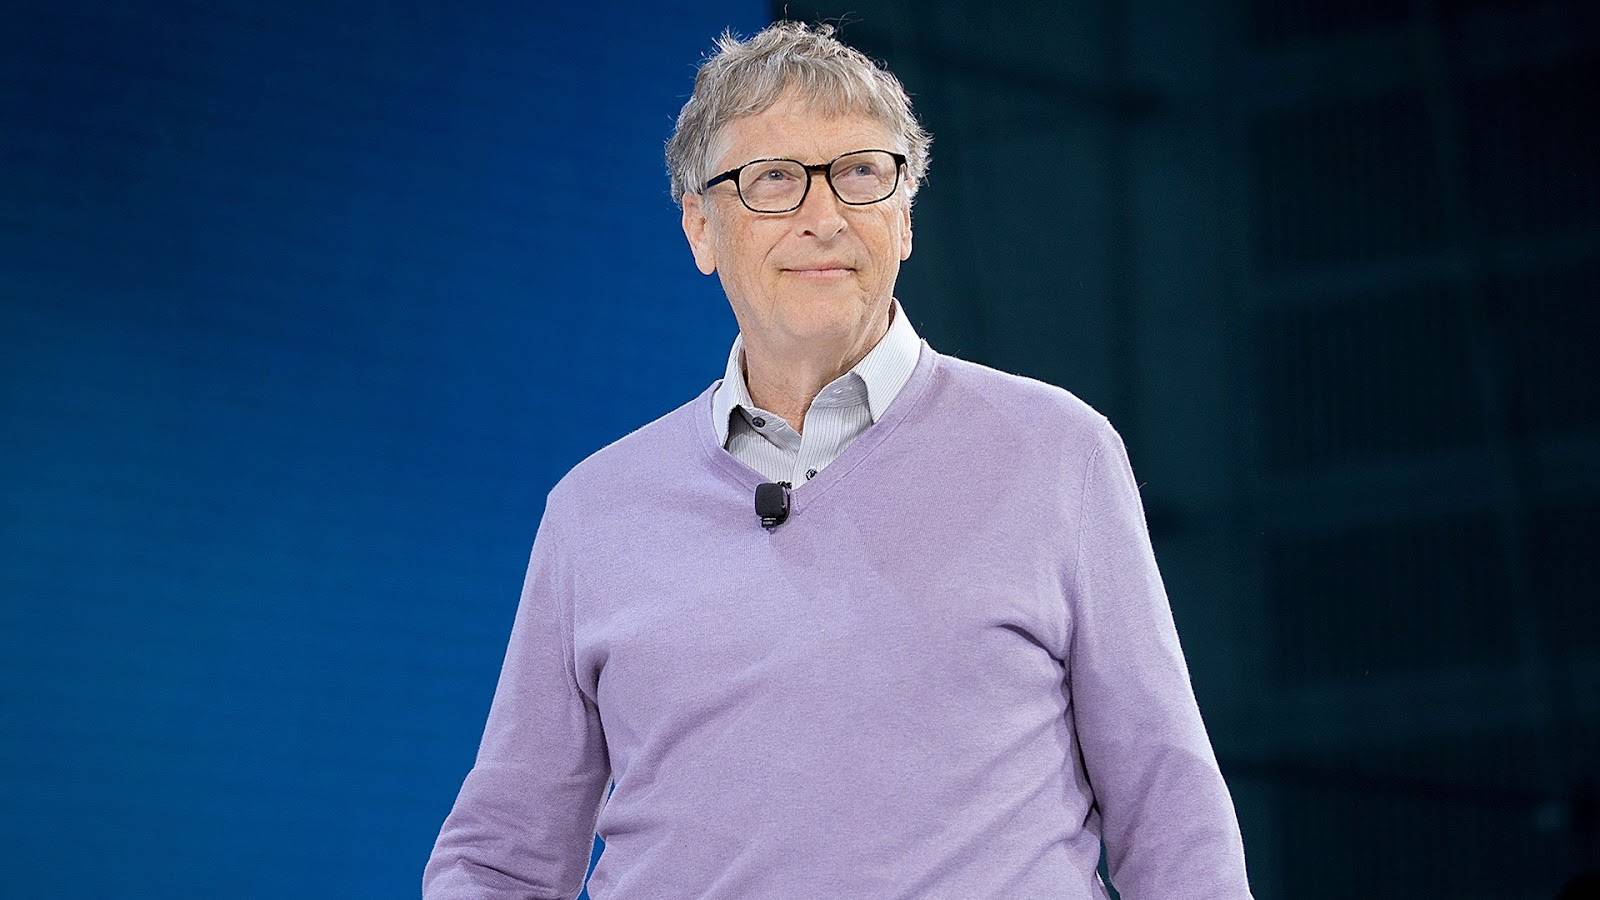 Tỷ phú Bill Gates: Áp dụng một PHƯƠNG PHÁP dạy con đơn giản nhưng nhiều nhà sớm bỏ cuộc, cựu Tổng thống Mỹ, Steve Jobs cũng thực hiện- Ảnh 1.